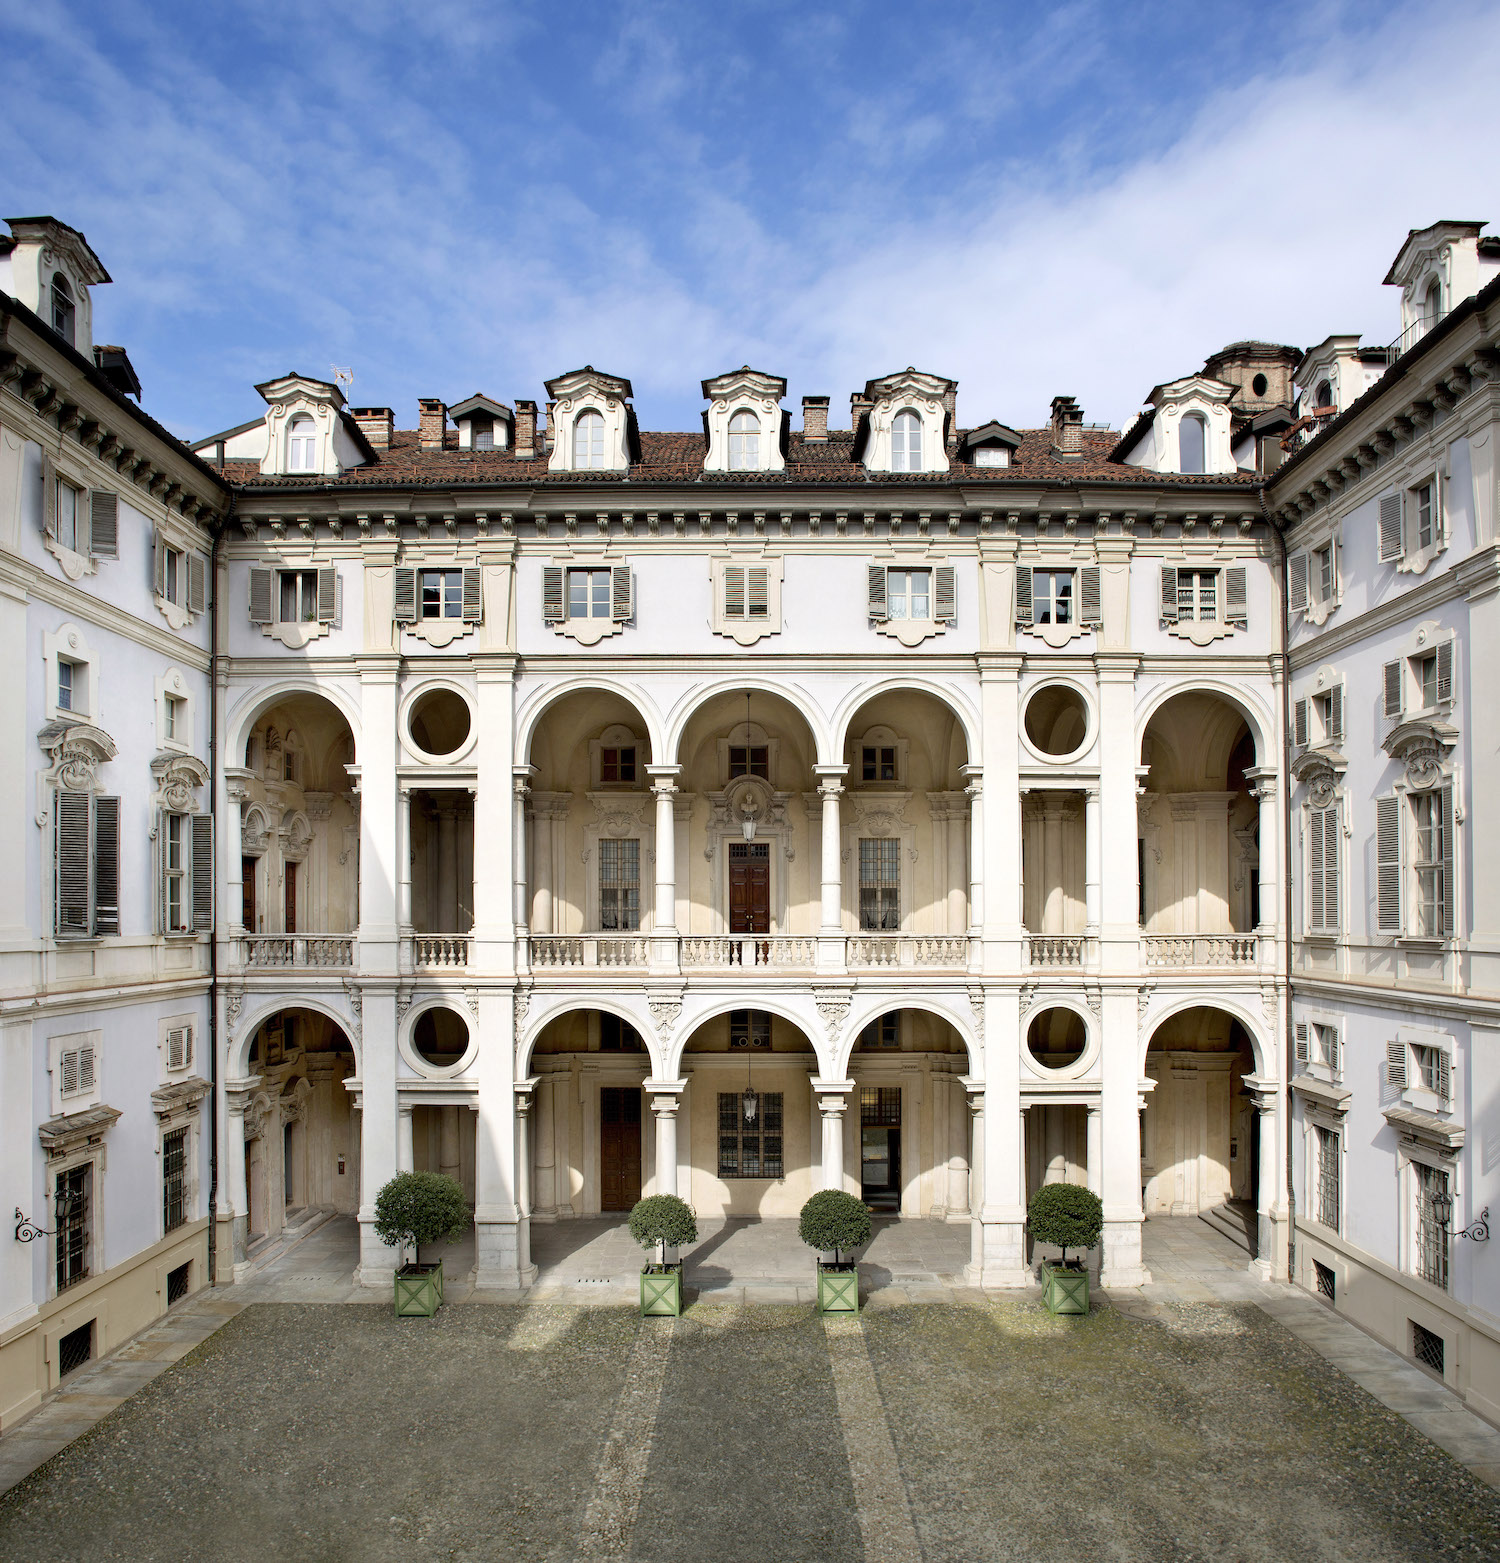 Il cortile tra loggiati, gallerie e colonne @ Palazzo Saluzzo Paesana